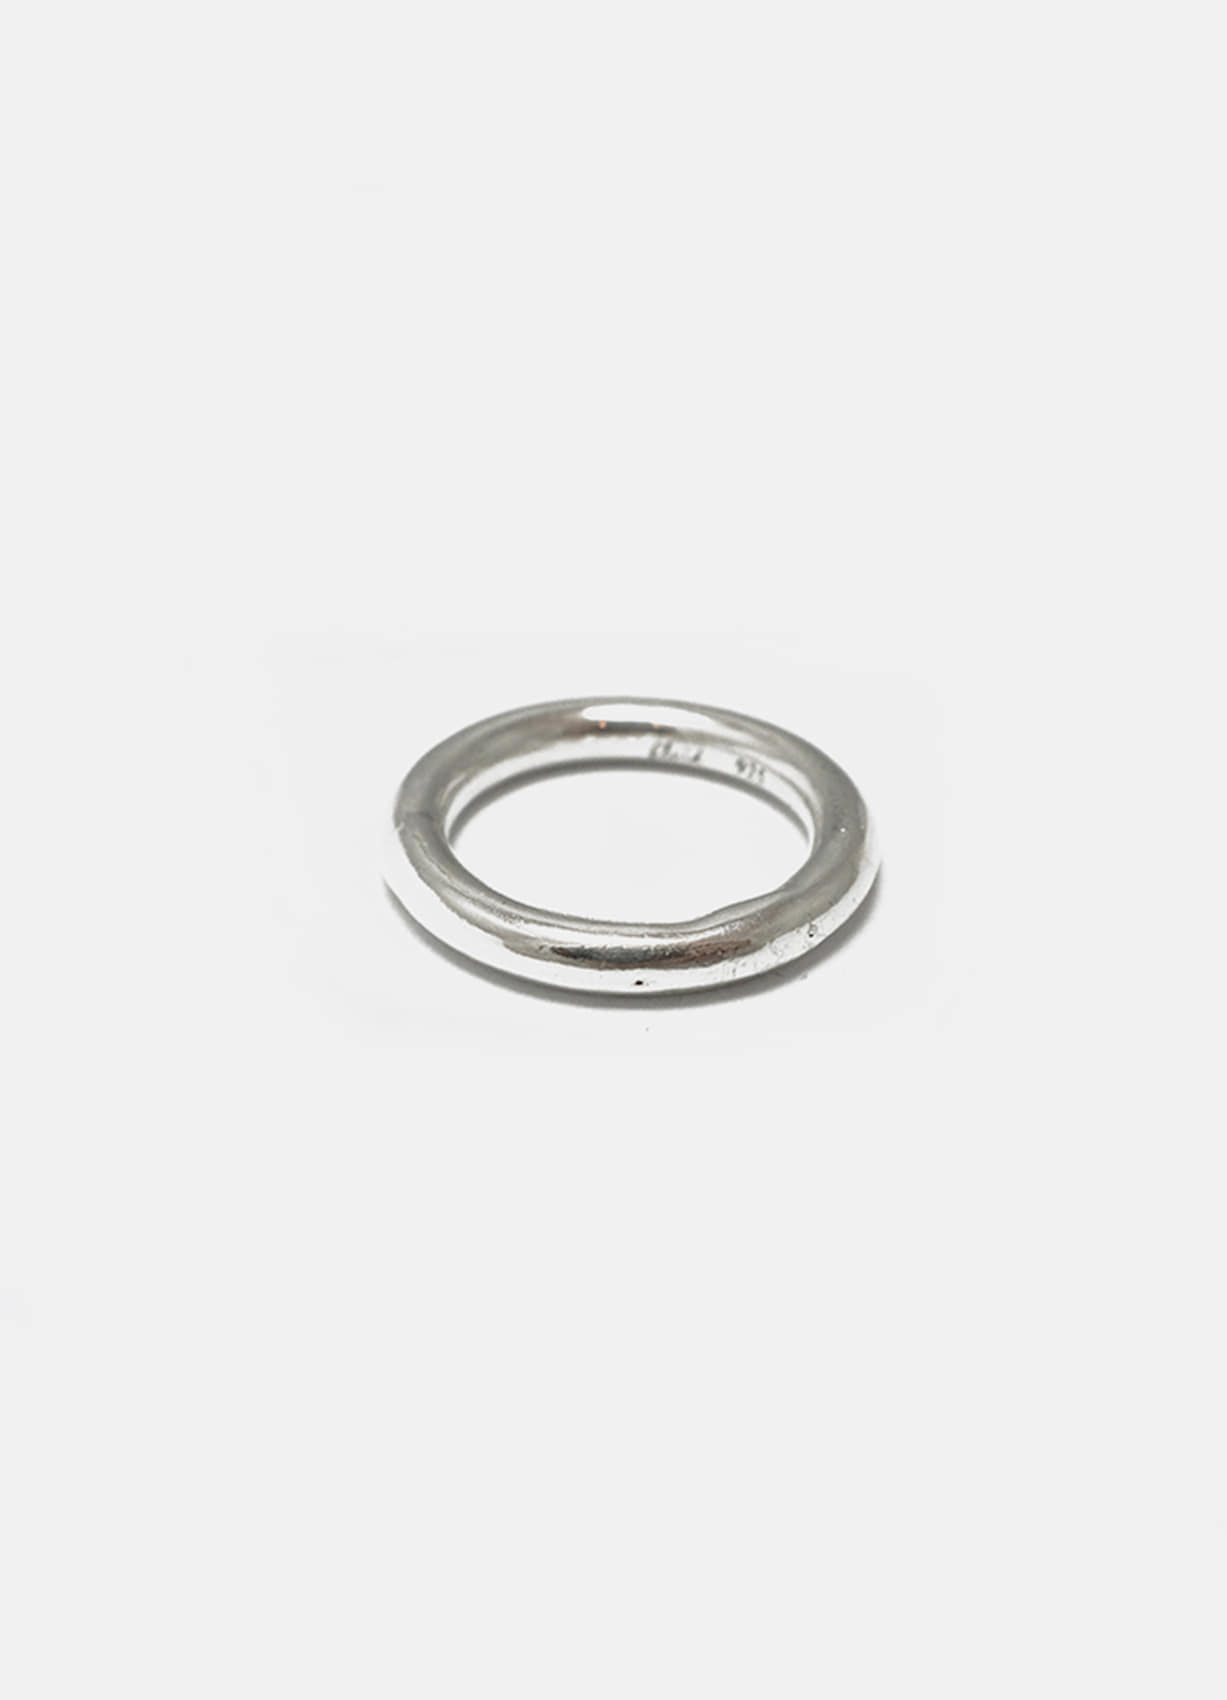 [fluid] 4.0mm basic O ring